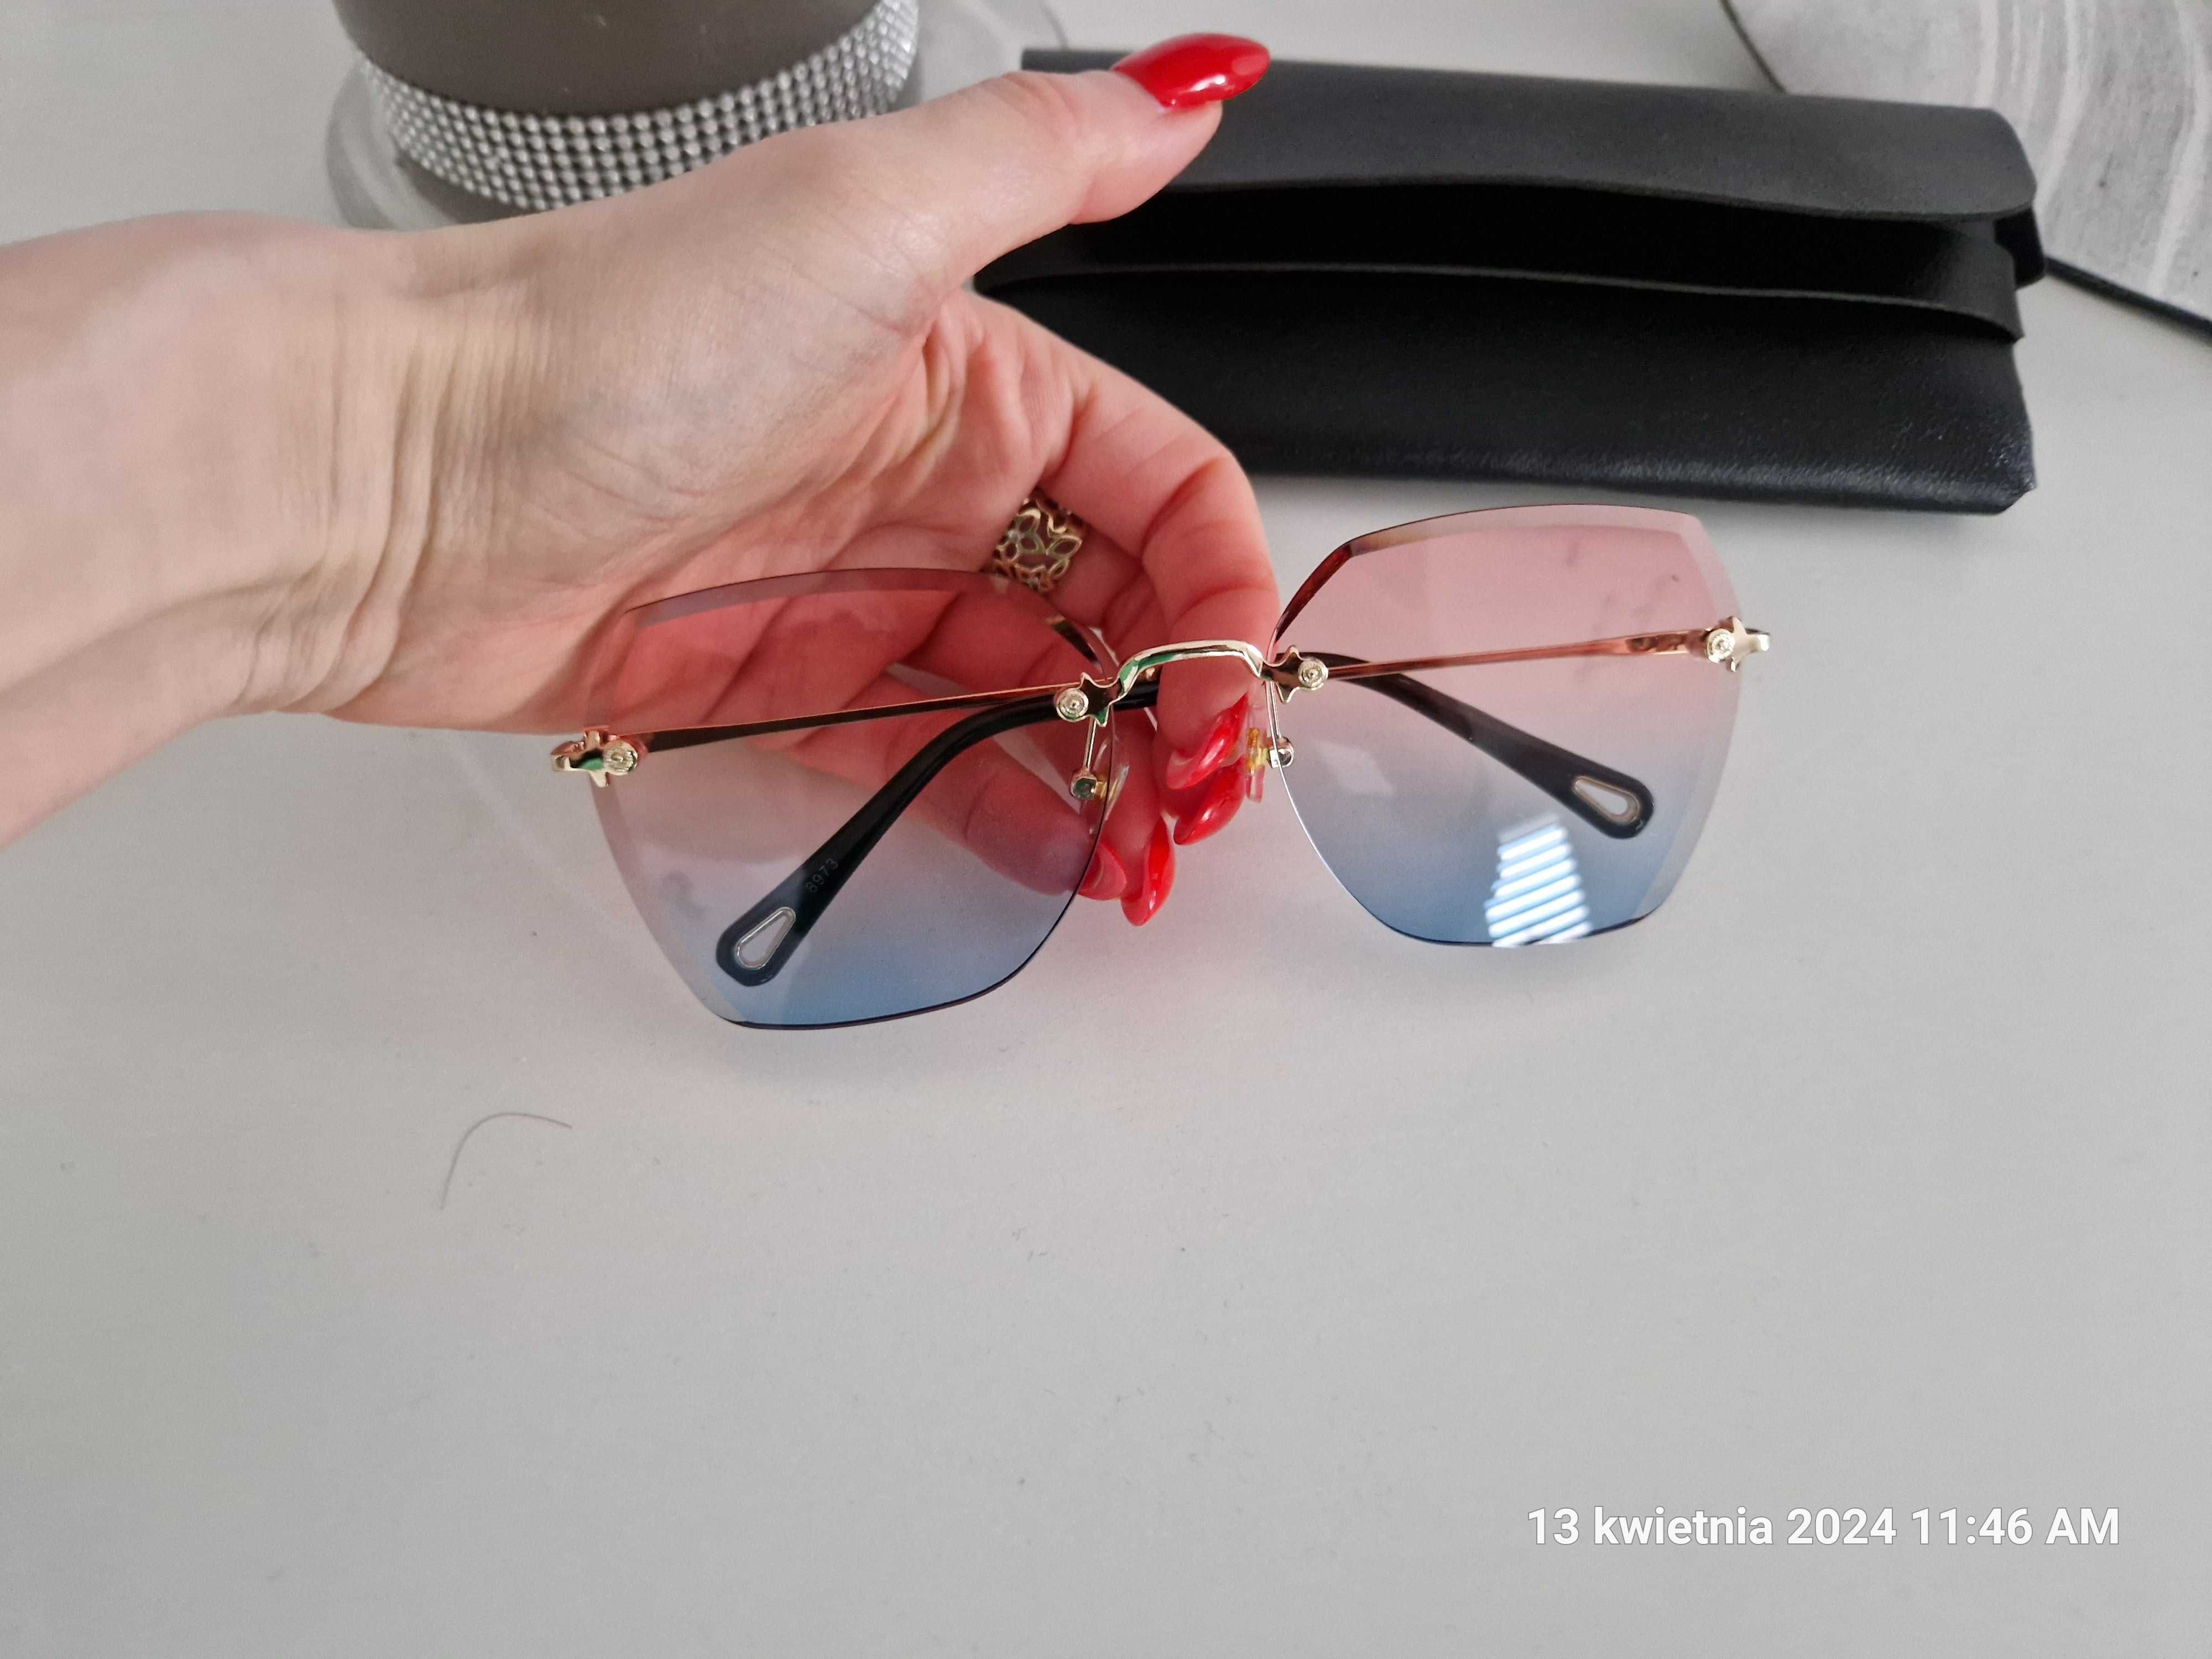 Nowe przeciwsłoneczne okulary ombre, rózowo niebieskie